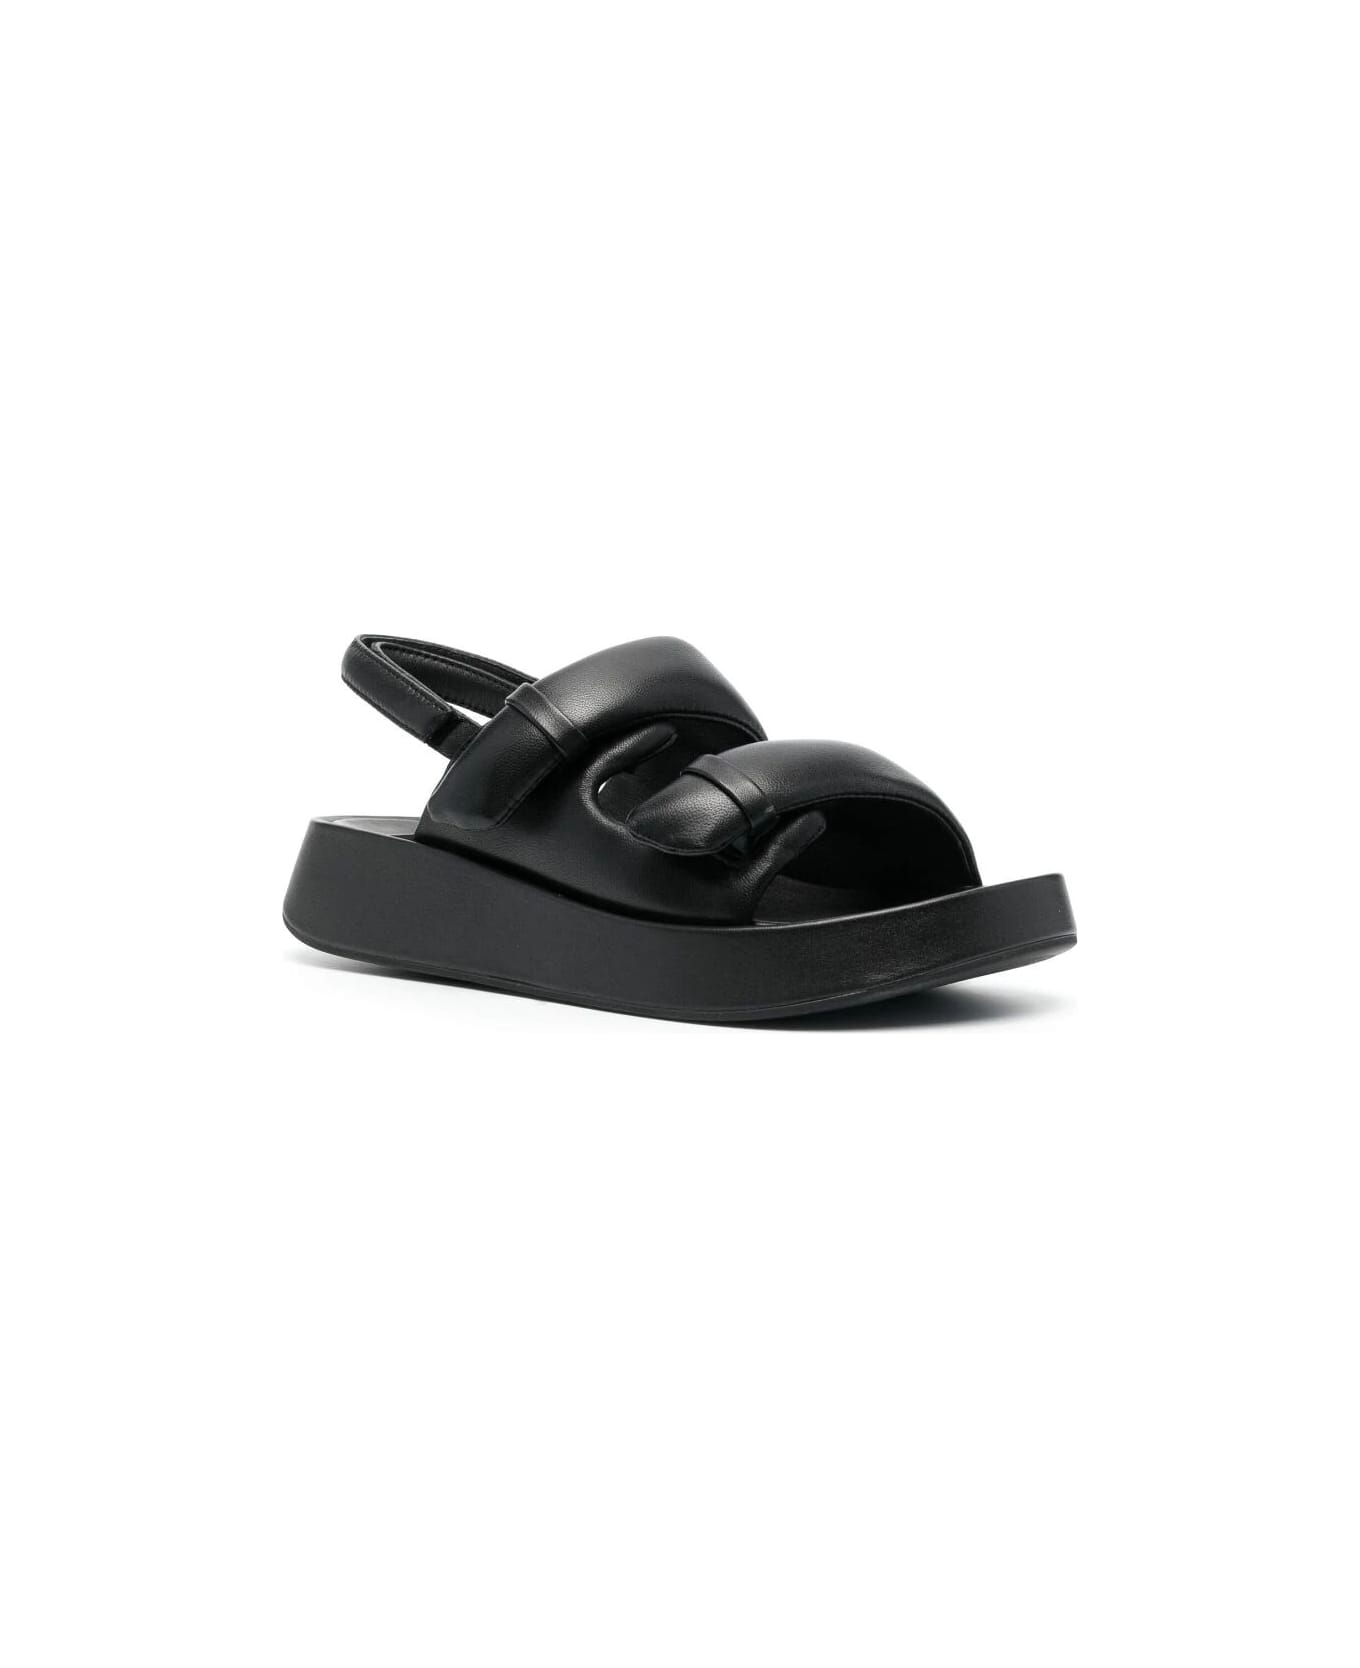 Ash Vinci01 Sandals - Black